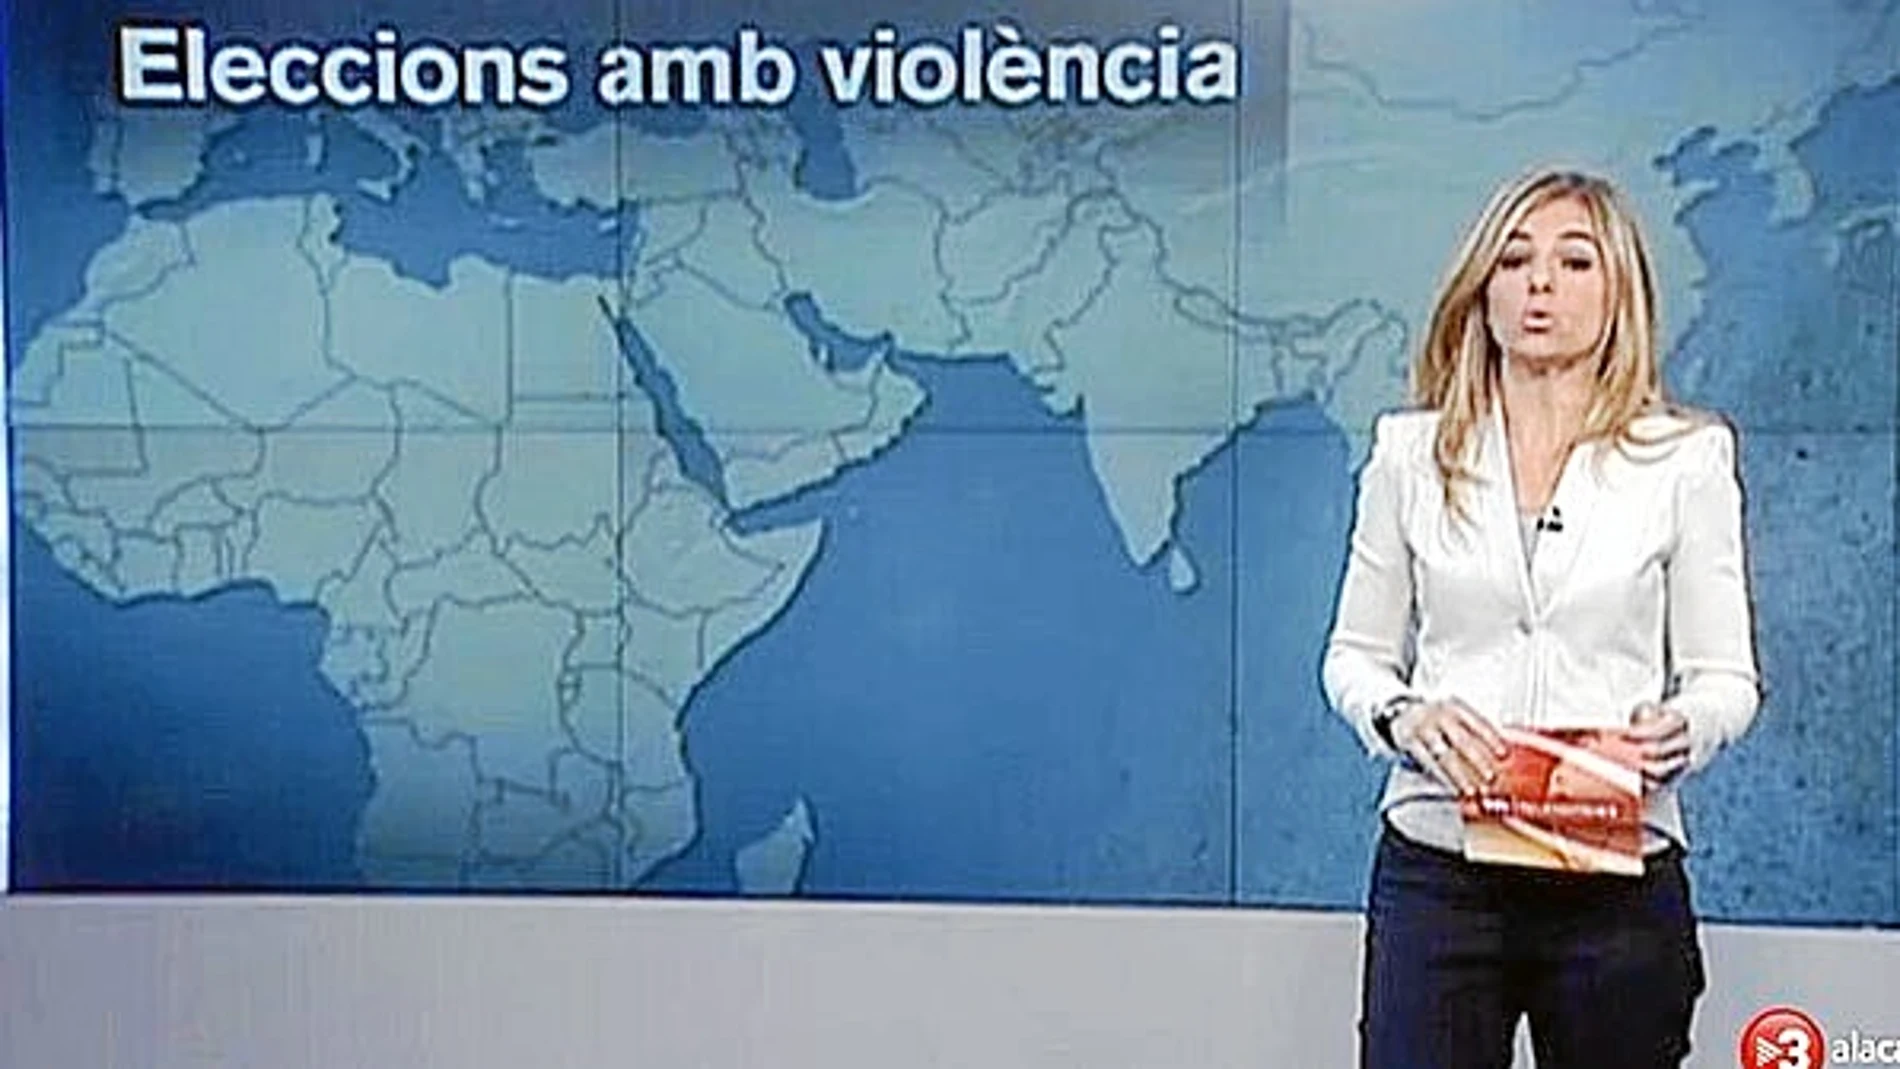 SEPARACIÓN. En el mapa de los informativos de TV3 Cataluña apareció separada del resto de España, con la misma frontera que entre todos los estados. Fue en la sección de internacional, el pasado lunes al mediodía.